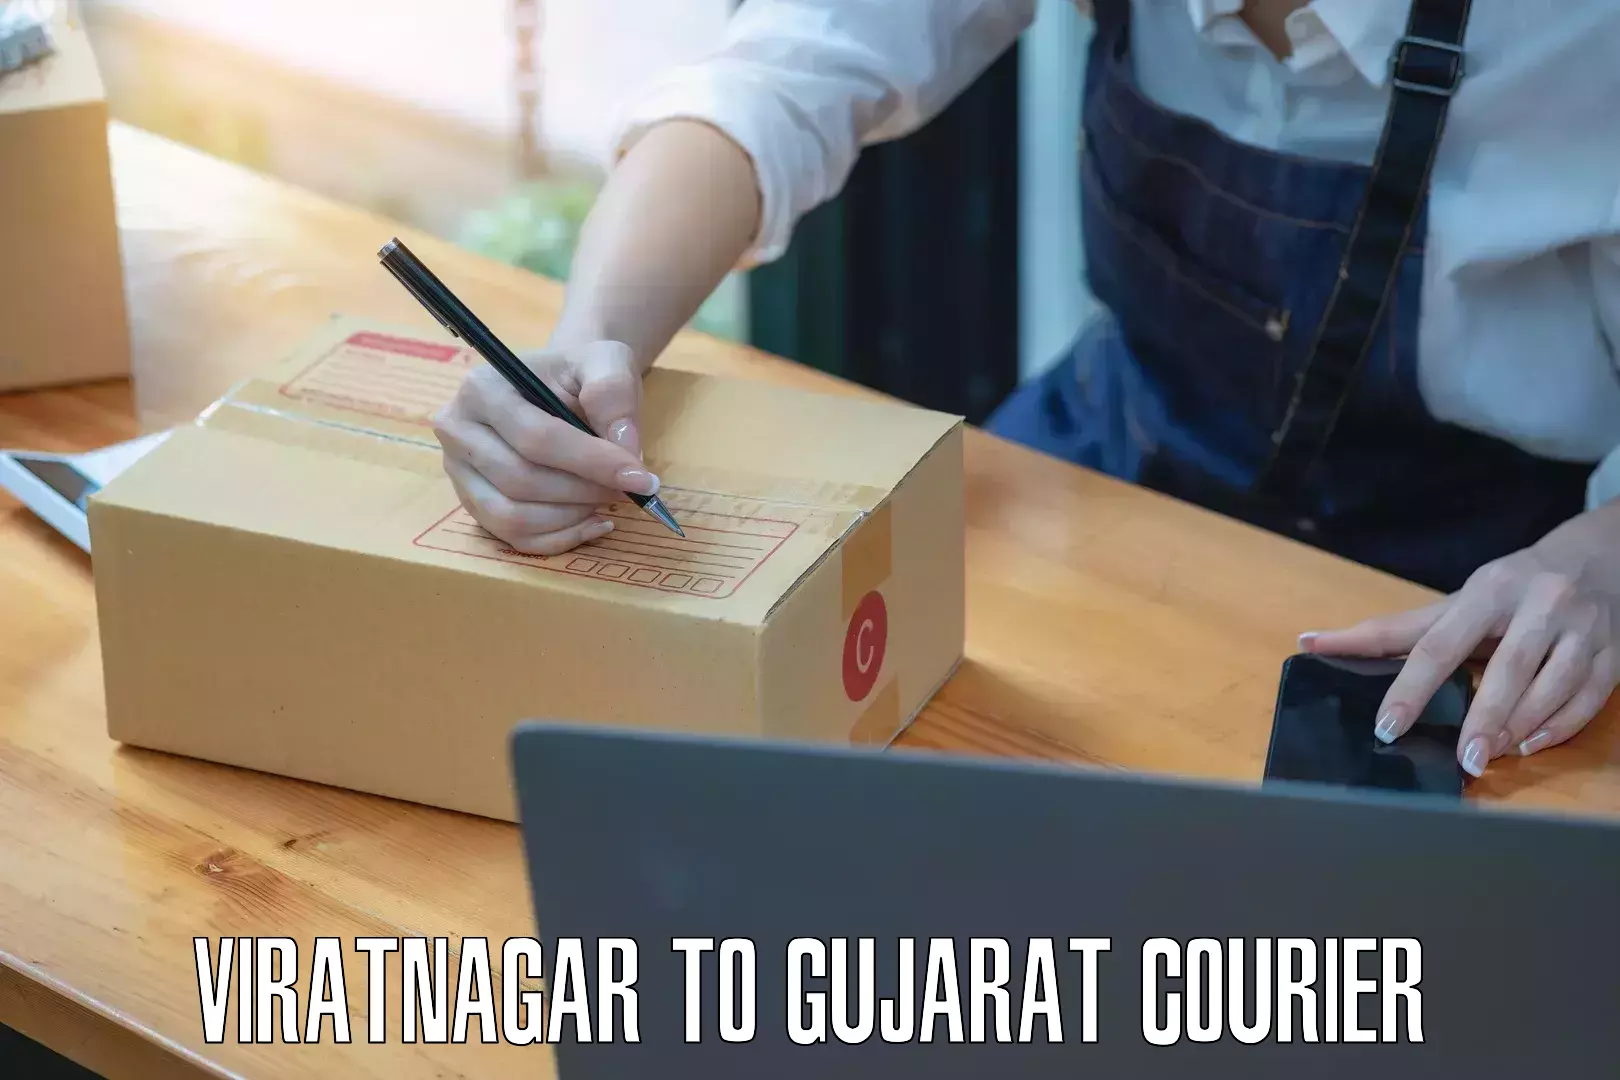 Courier service innovation Viratnagar to Gujarat